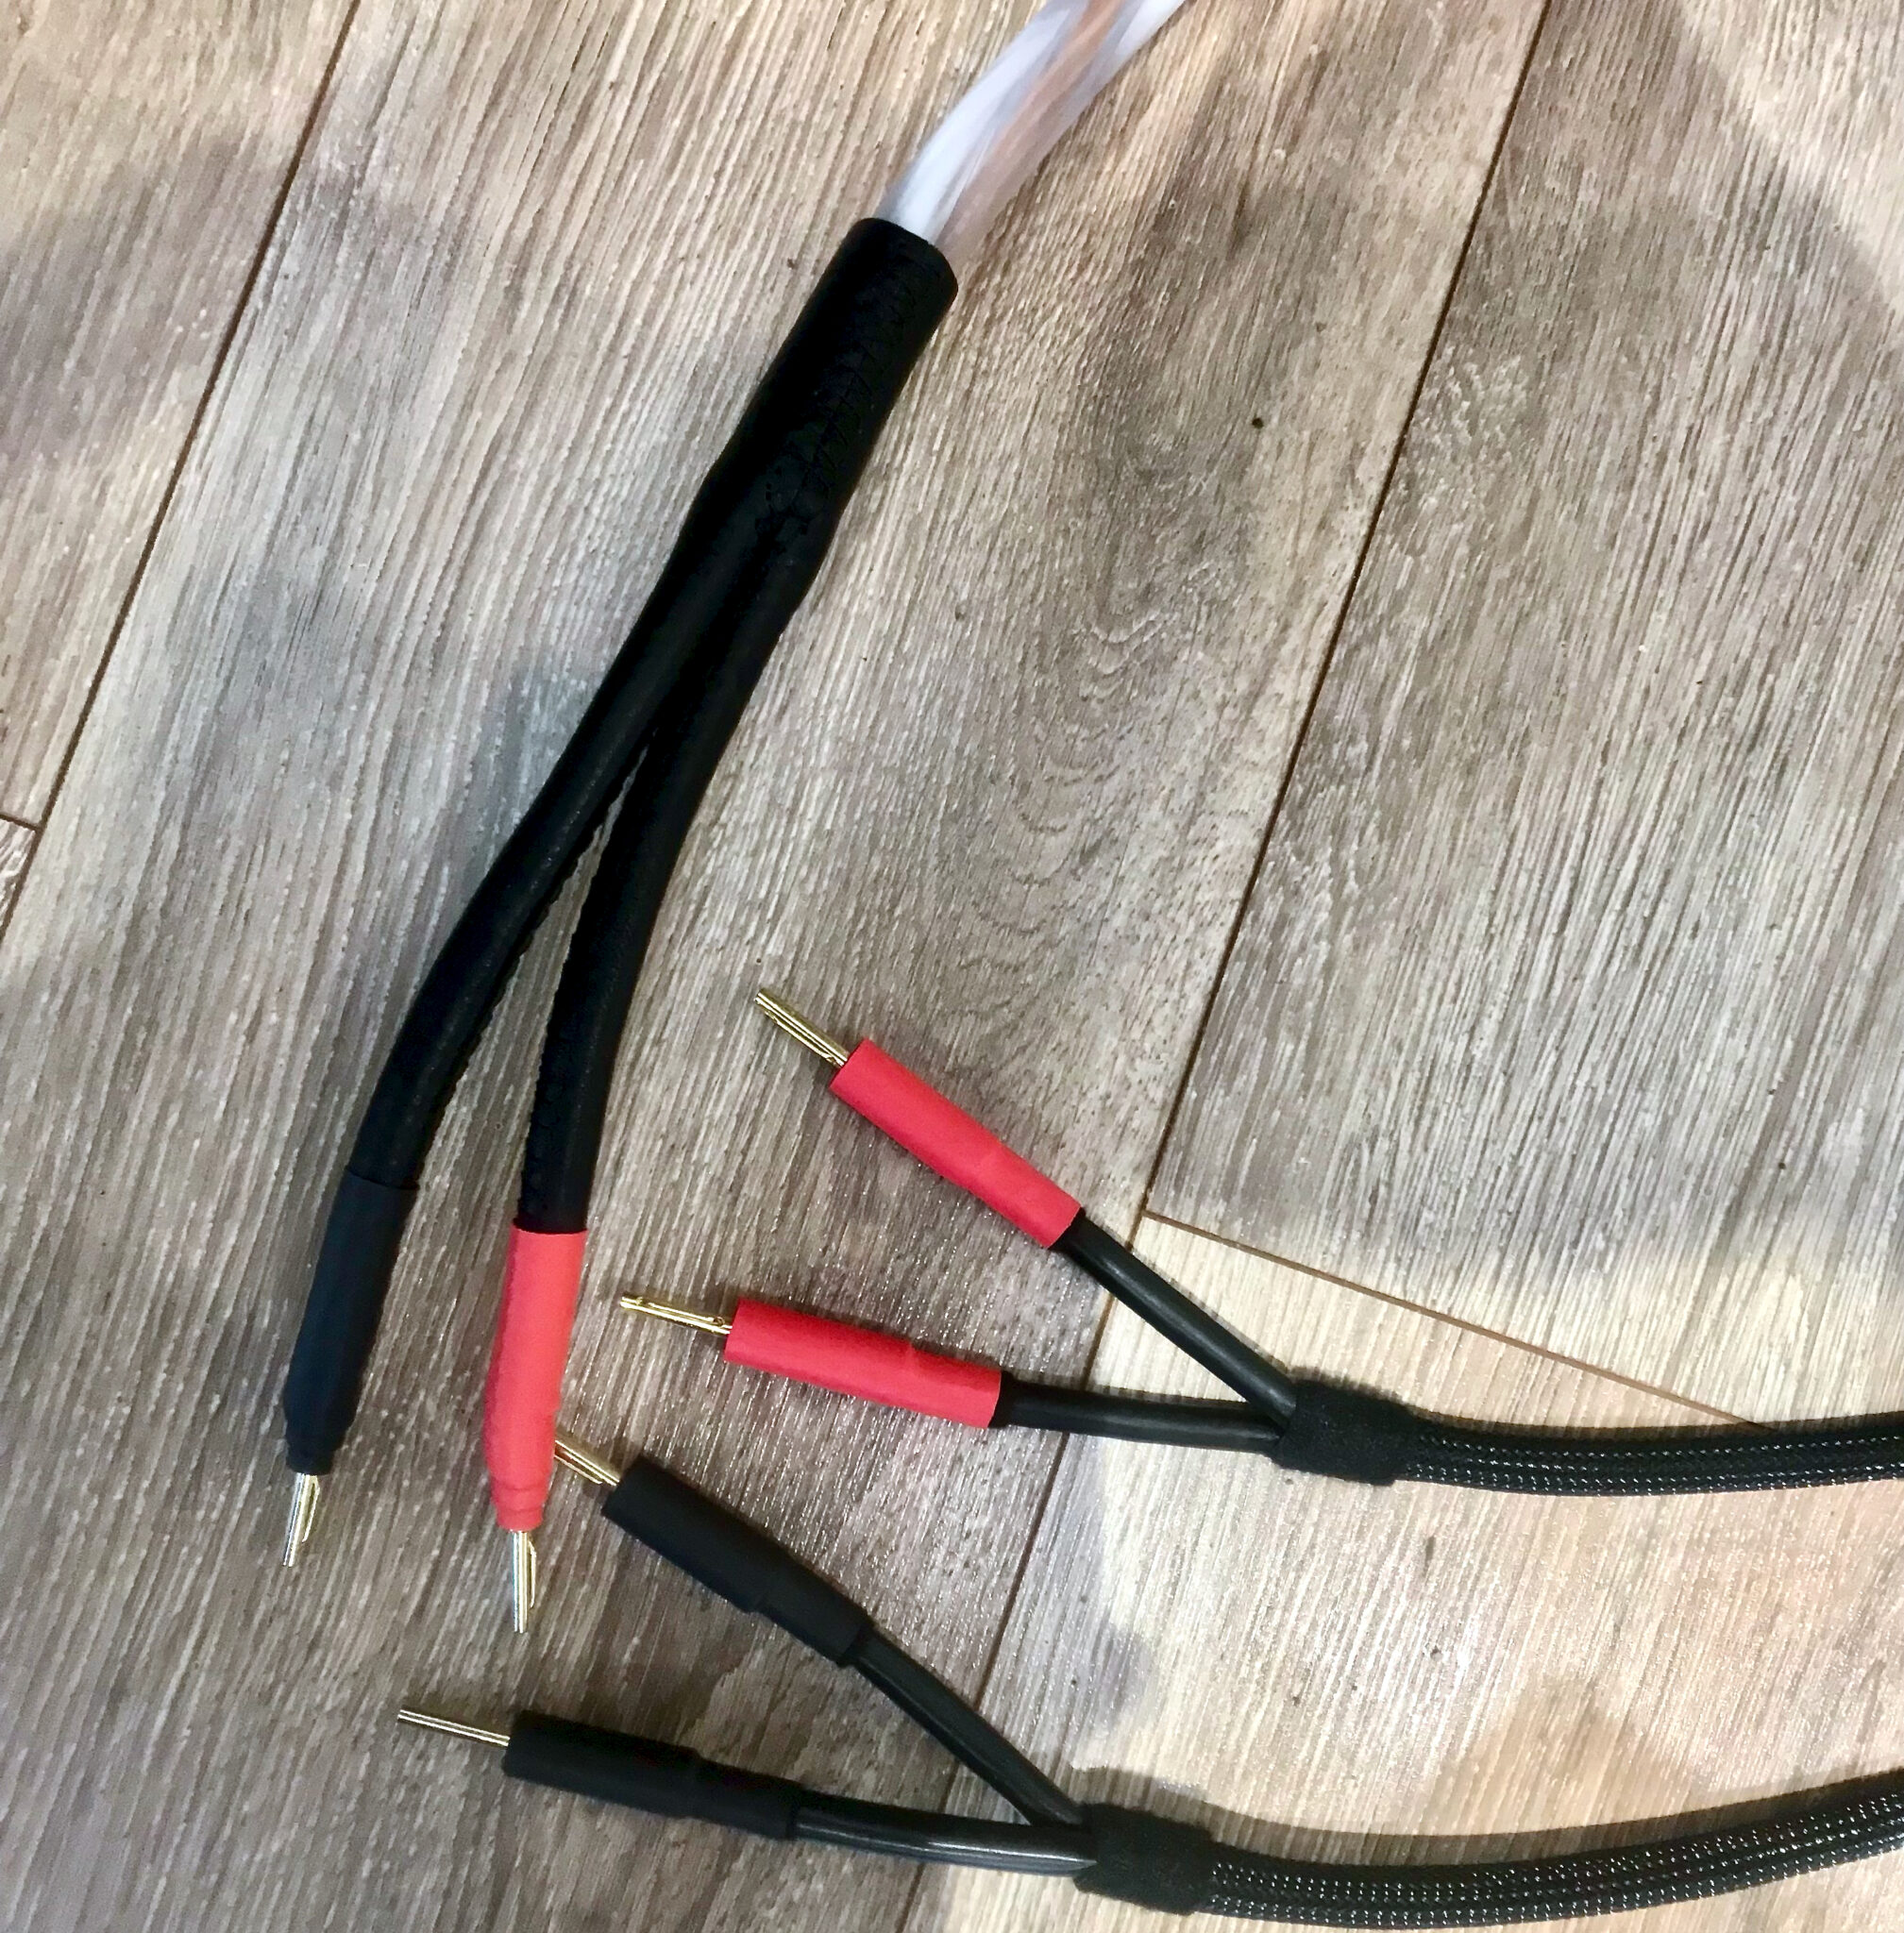 Speaker cables together